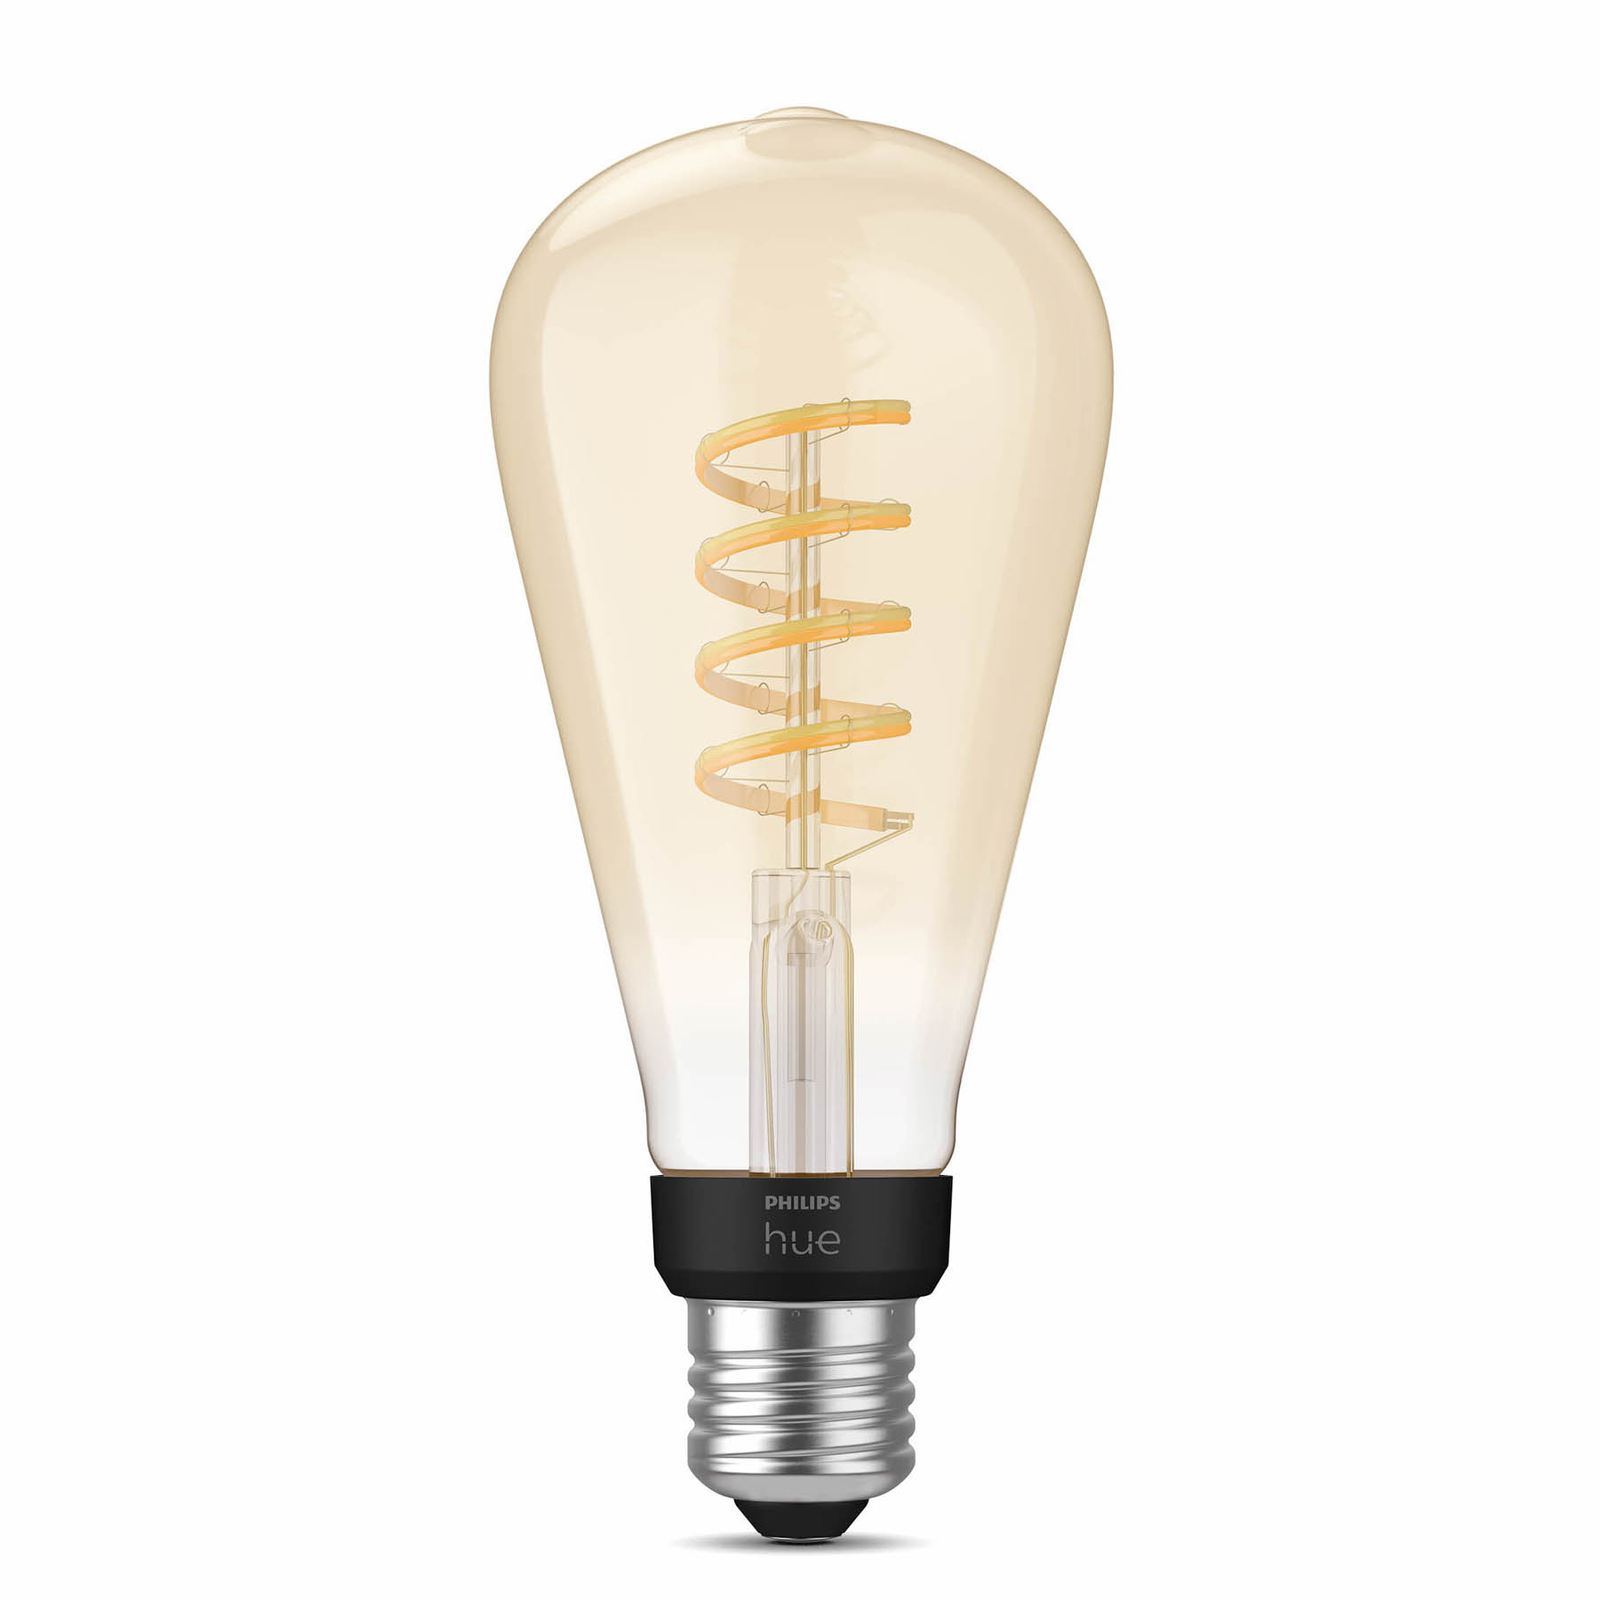 PhilipsHue E27 7W LED-lamppu Giant Edison filament